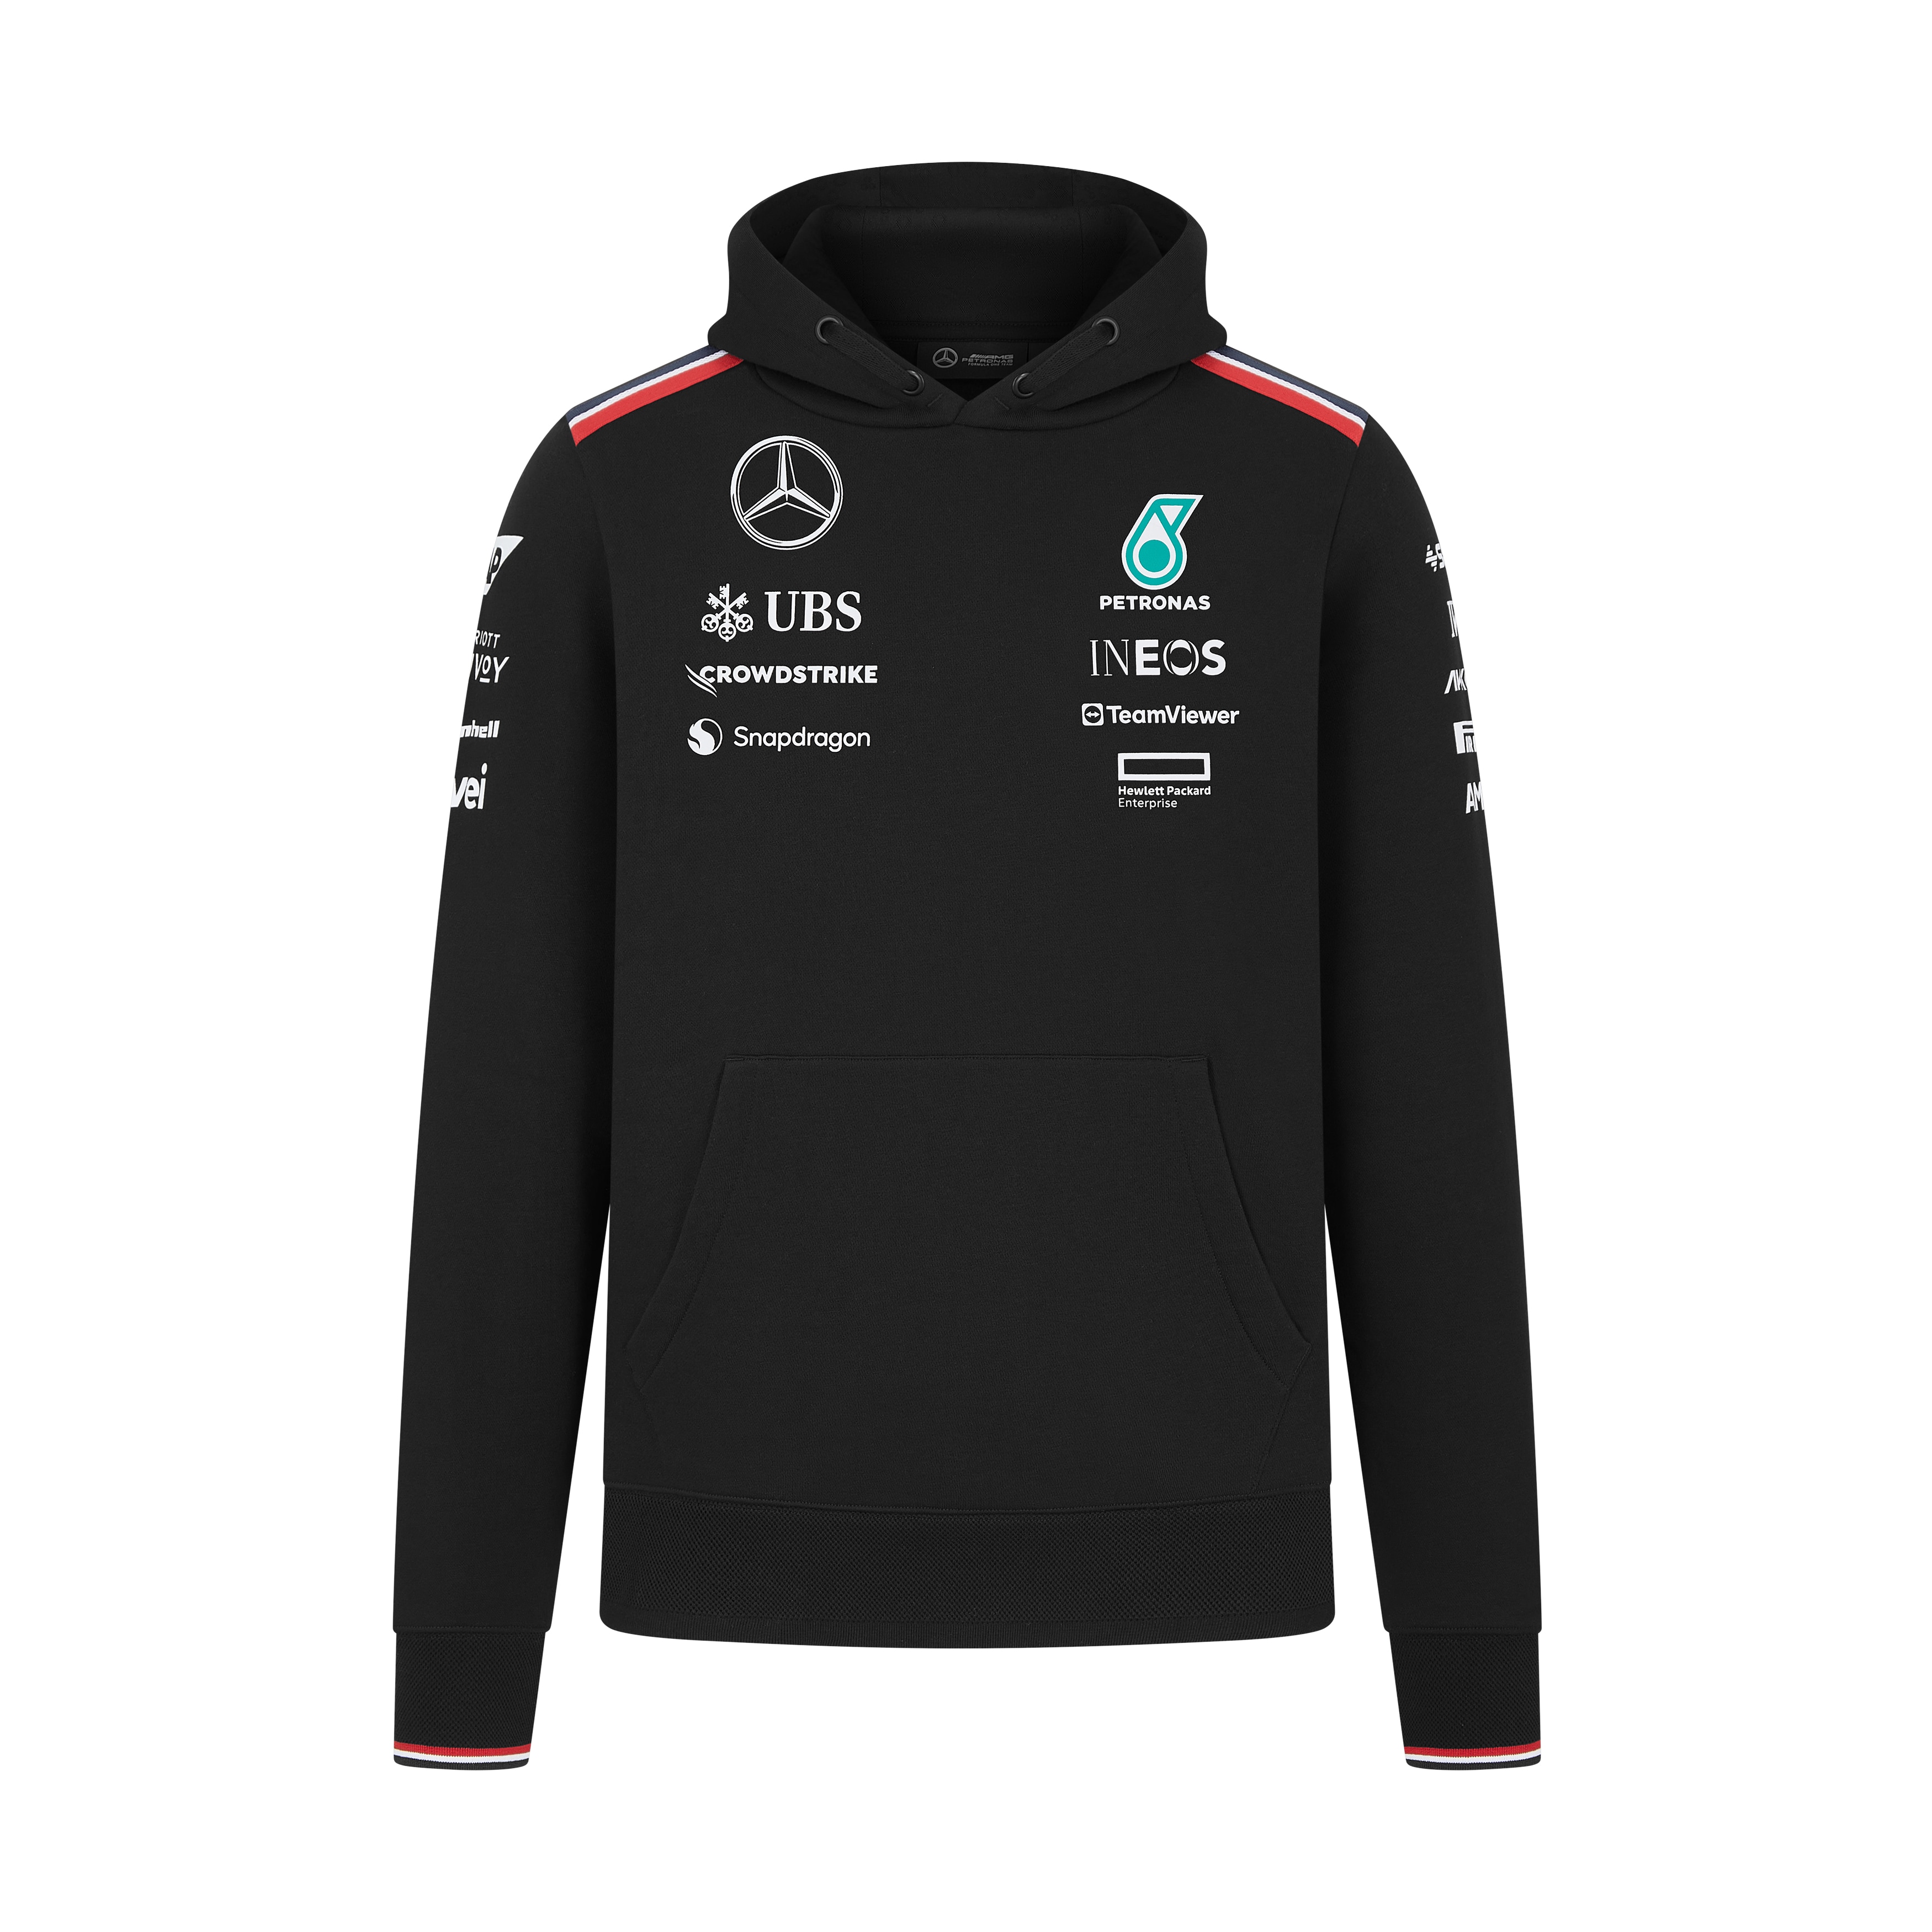 Sweathoody Unisex, Team, Mercedes-AMG F1 - schwarz, XS